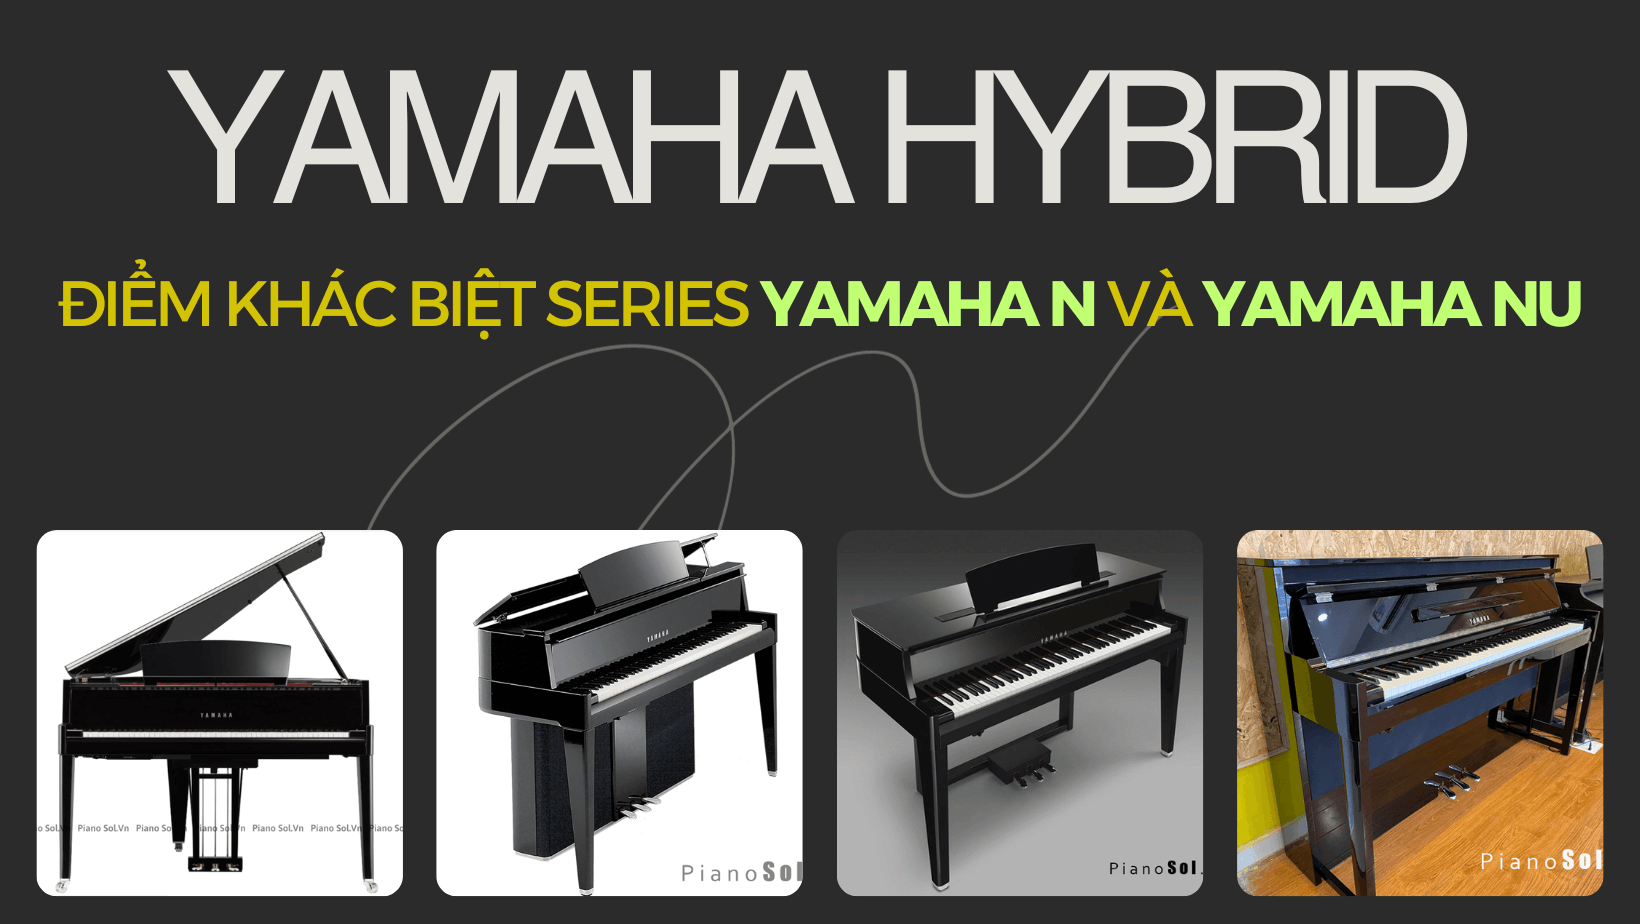 Piano điện Yamaha N và Yamaha NU